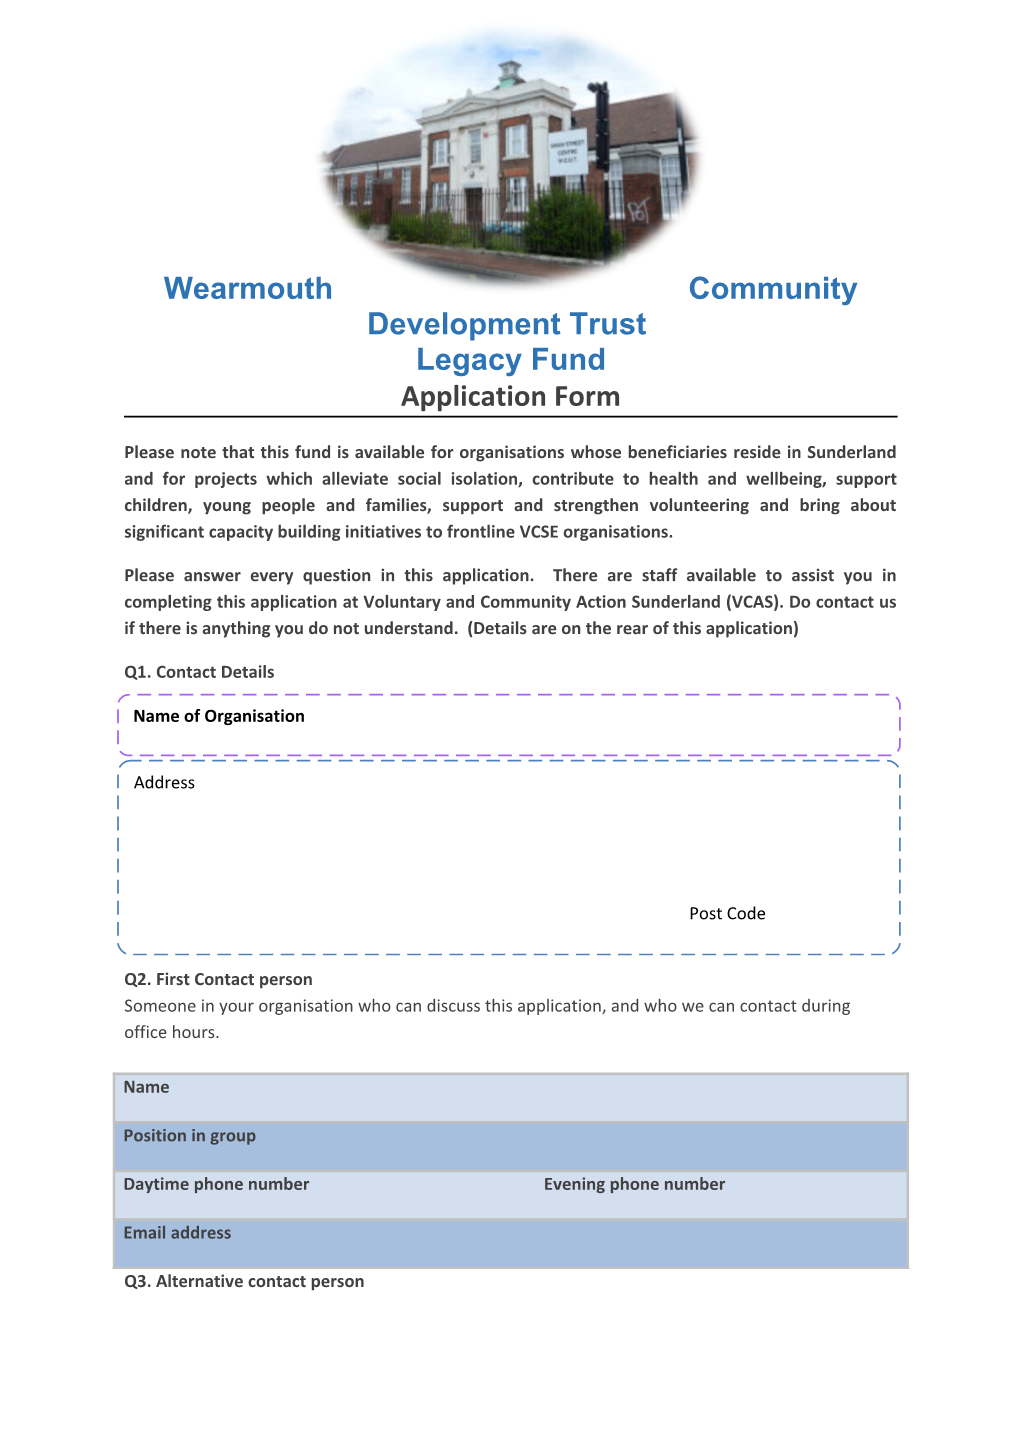 Wearmouth Community Development Trust